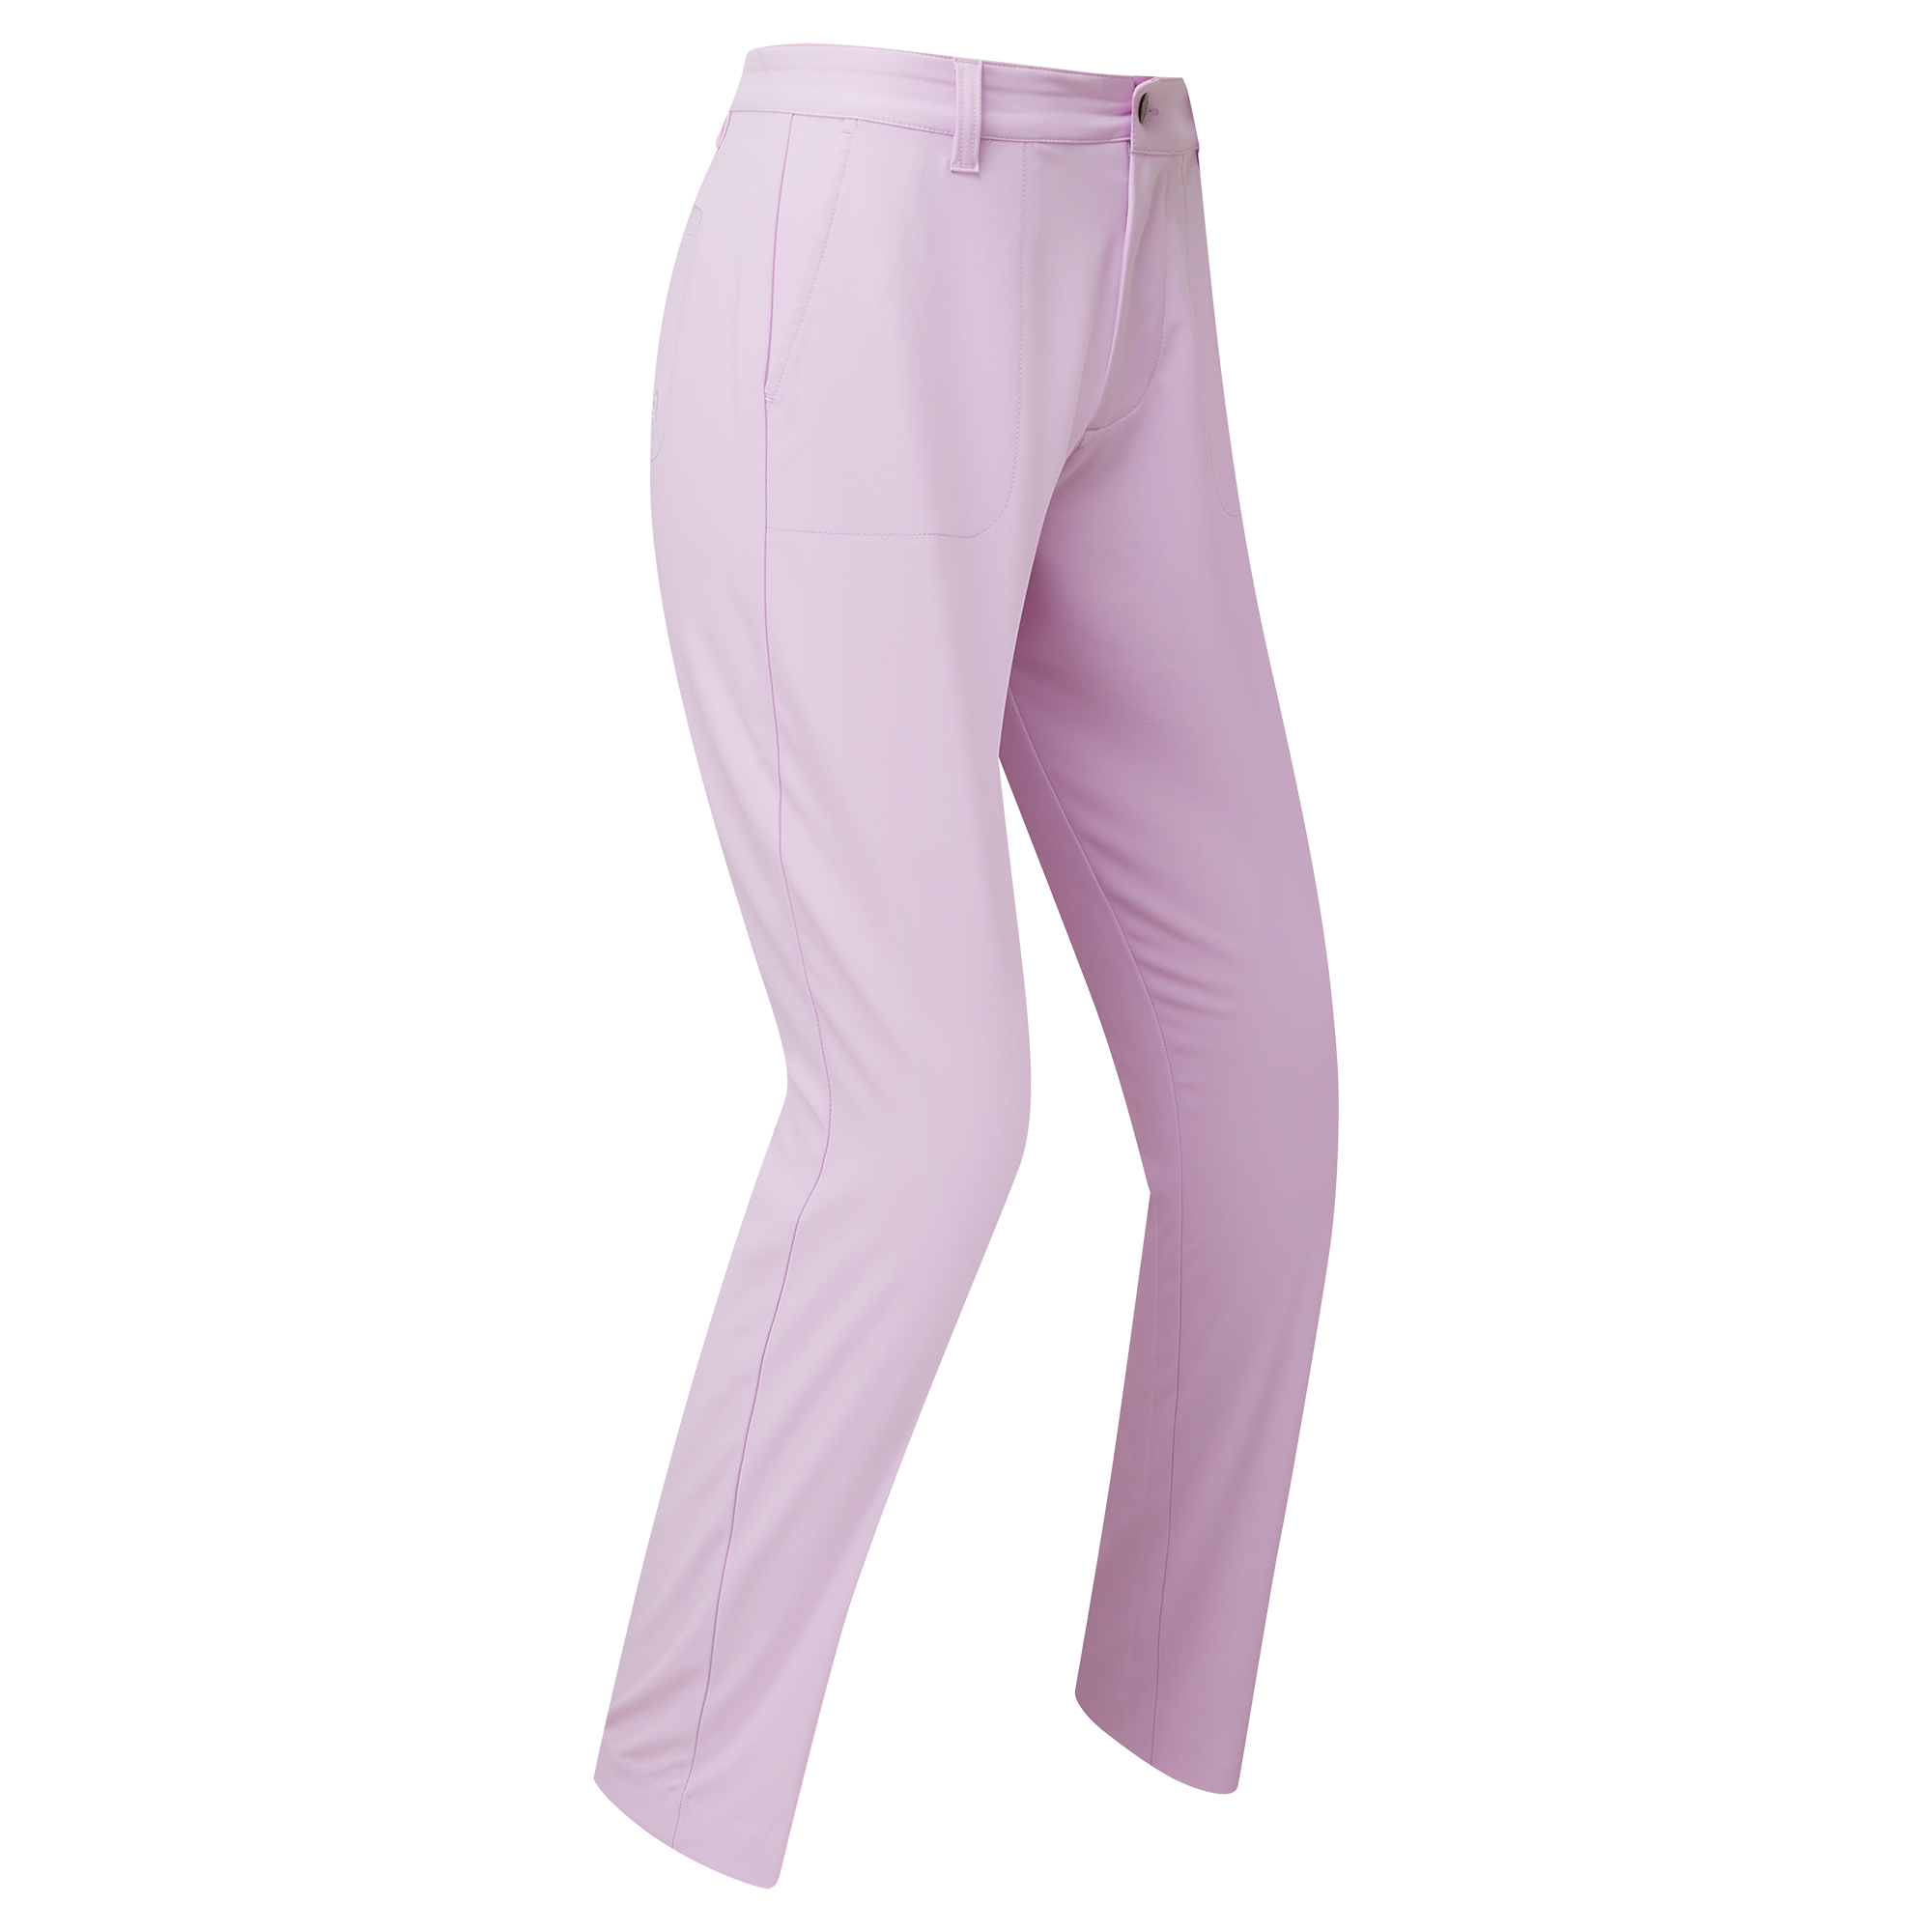 FootJoy Stretch Cropped dámské golfové kalhoty, světle fialové, vel. XS